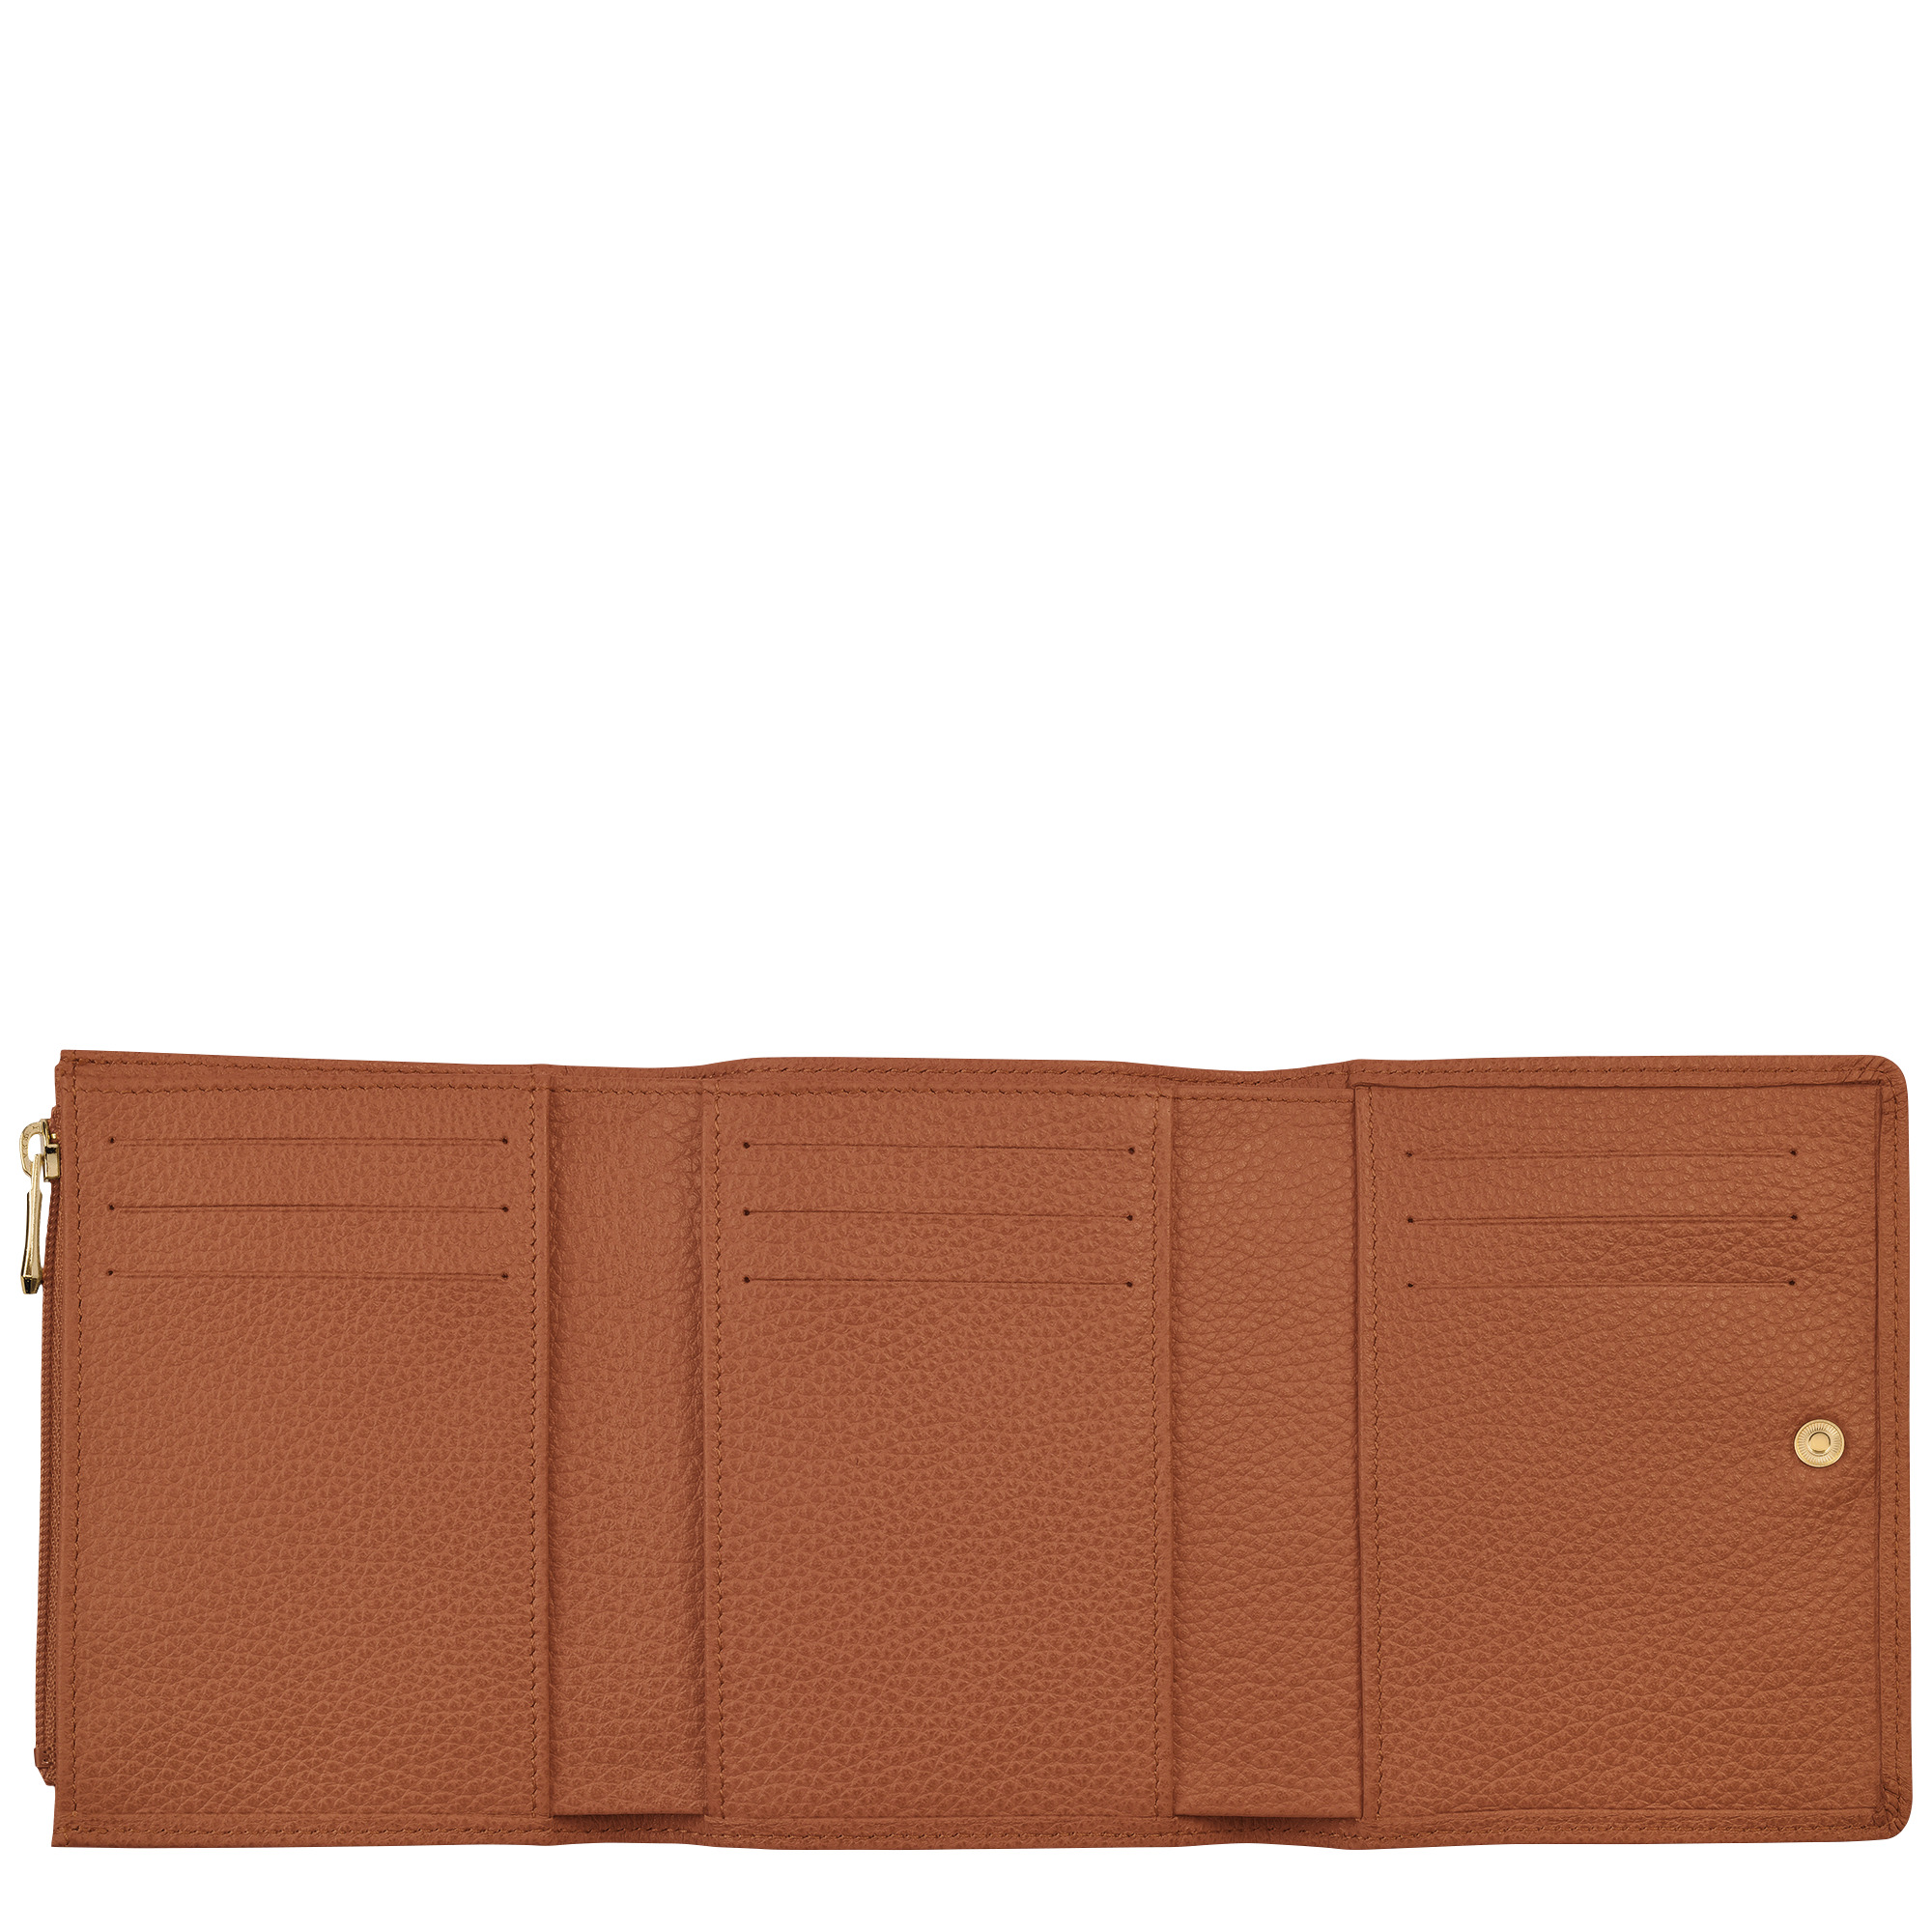 Le Foulonné Wallet Caramel - Leather - 2